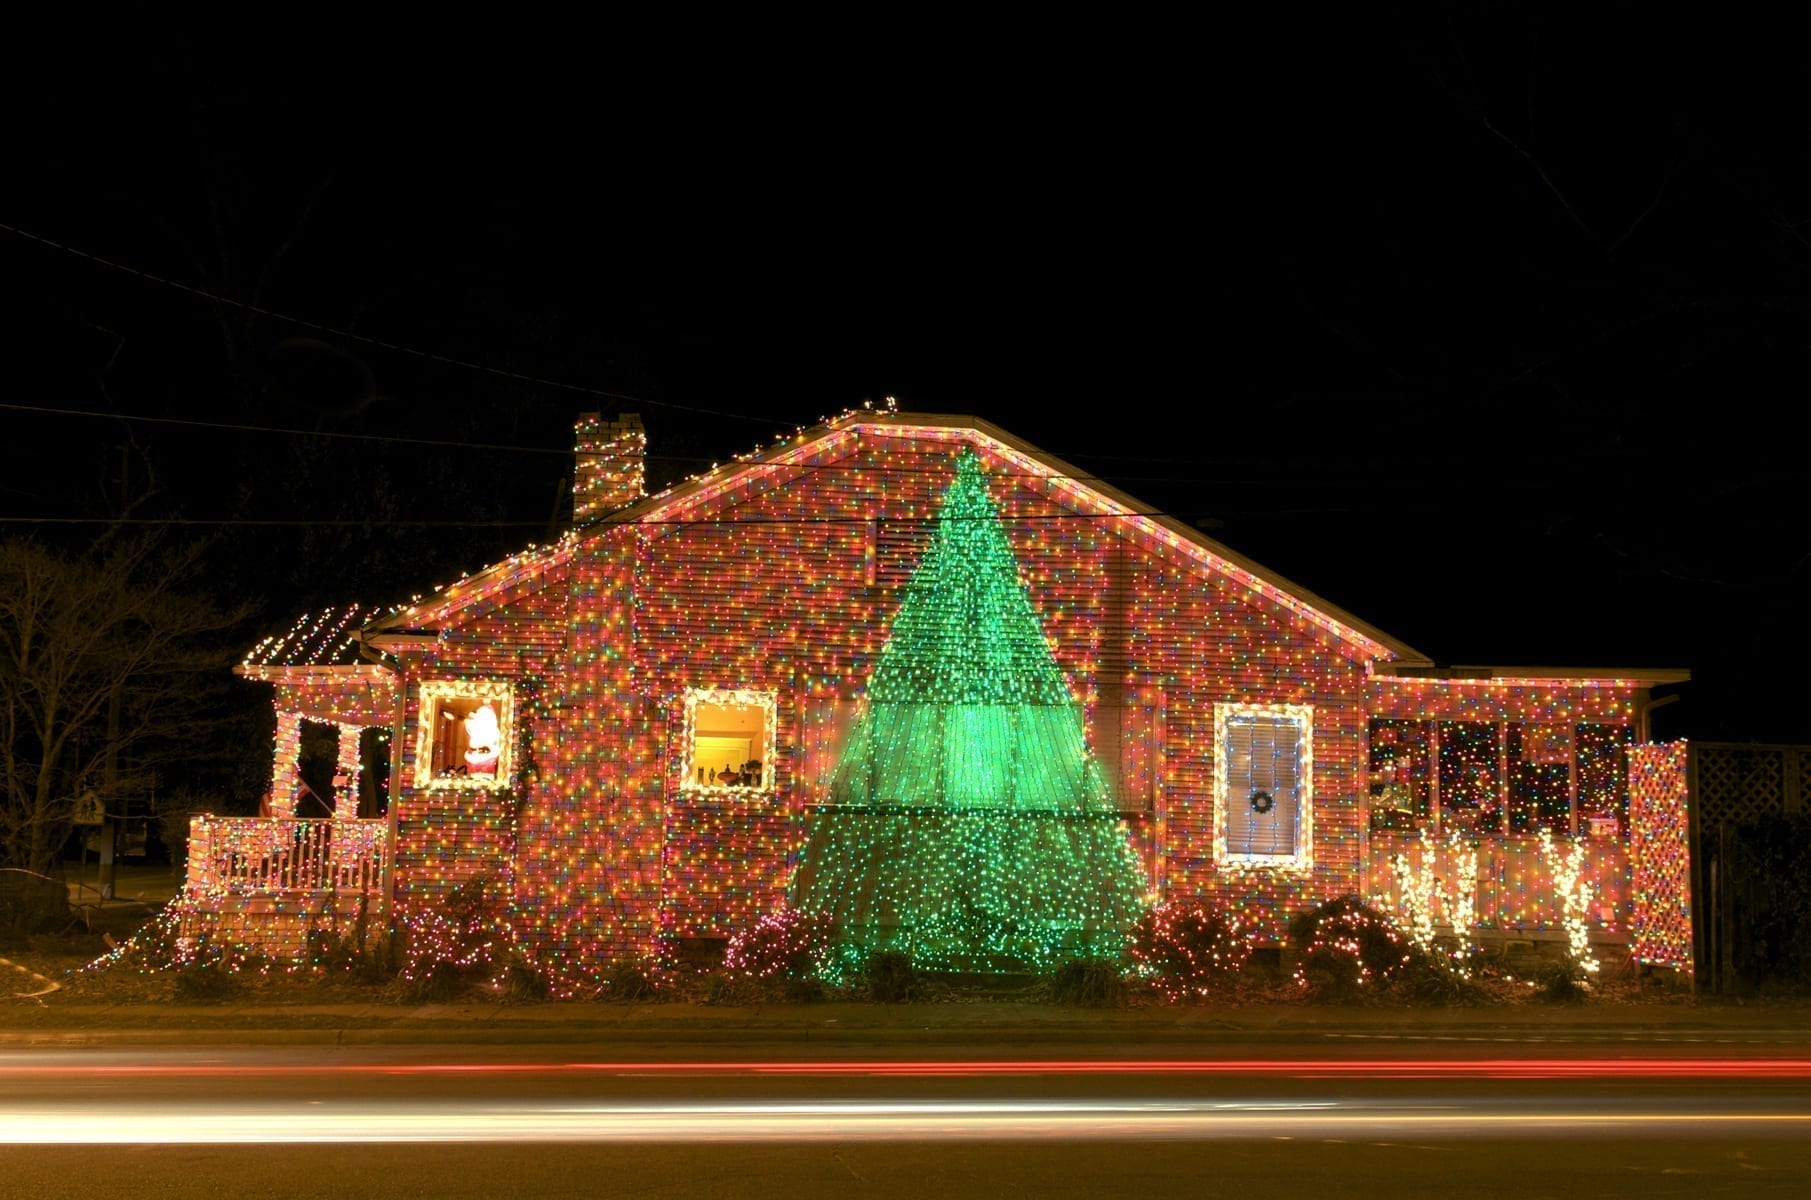 Christmas Lights on a House